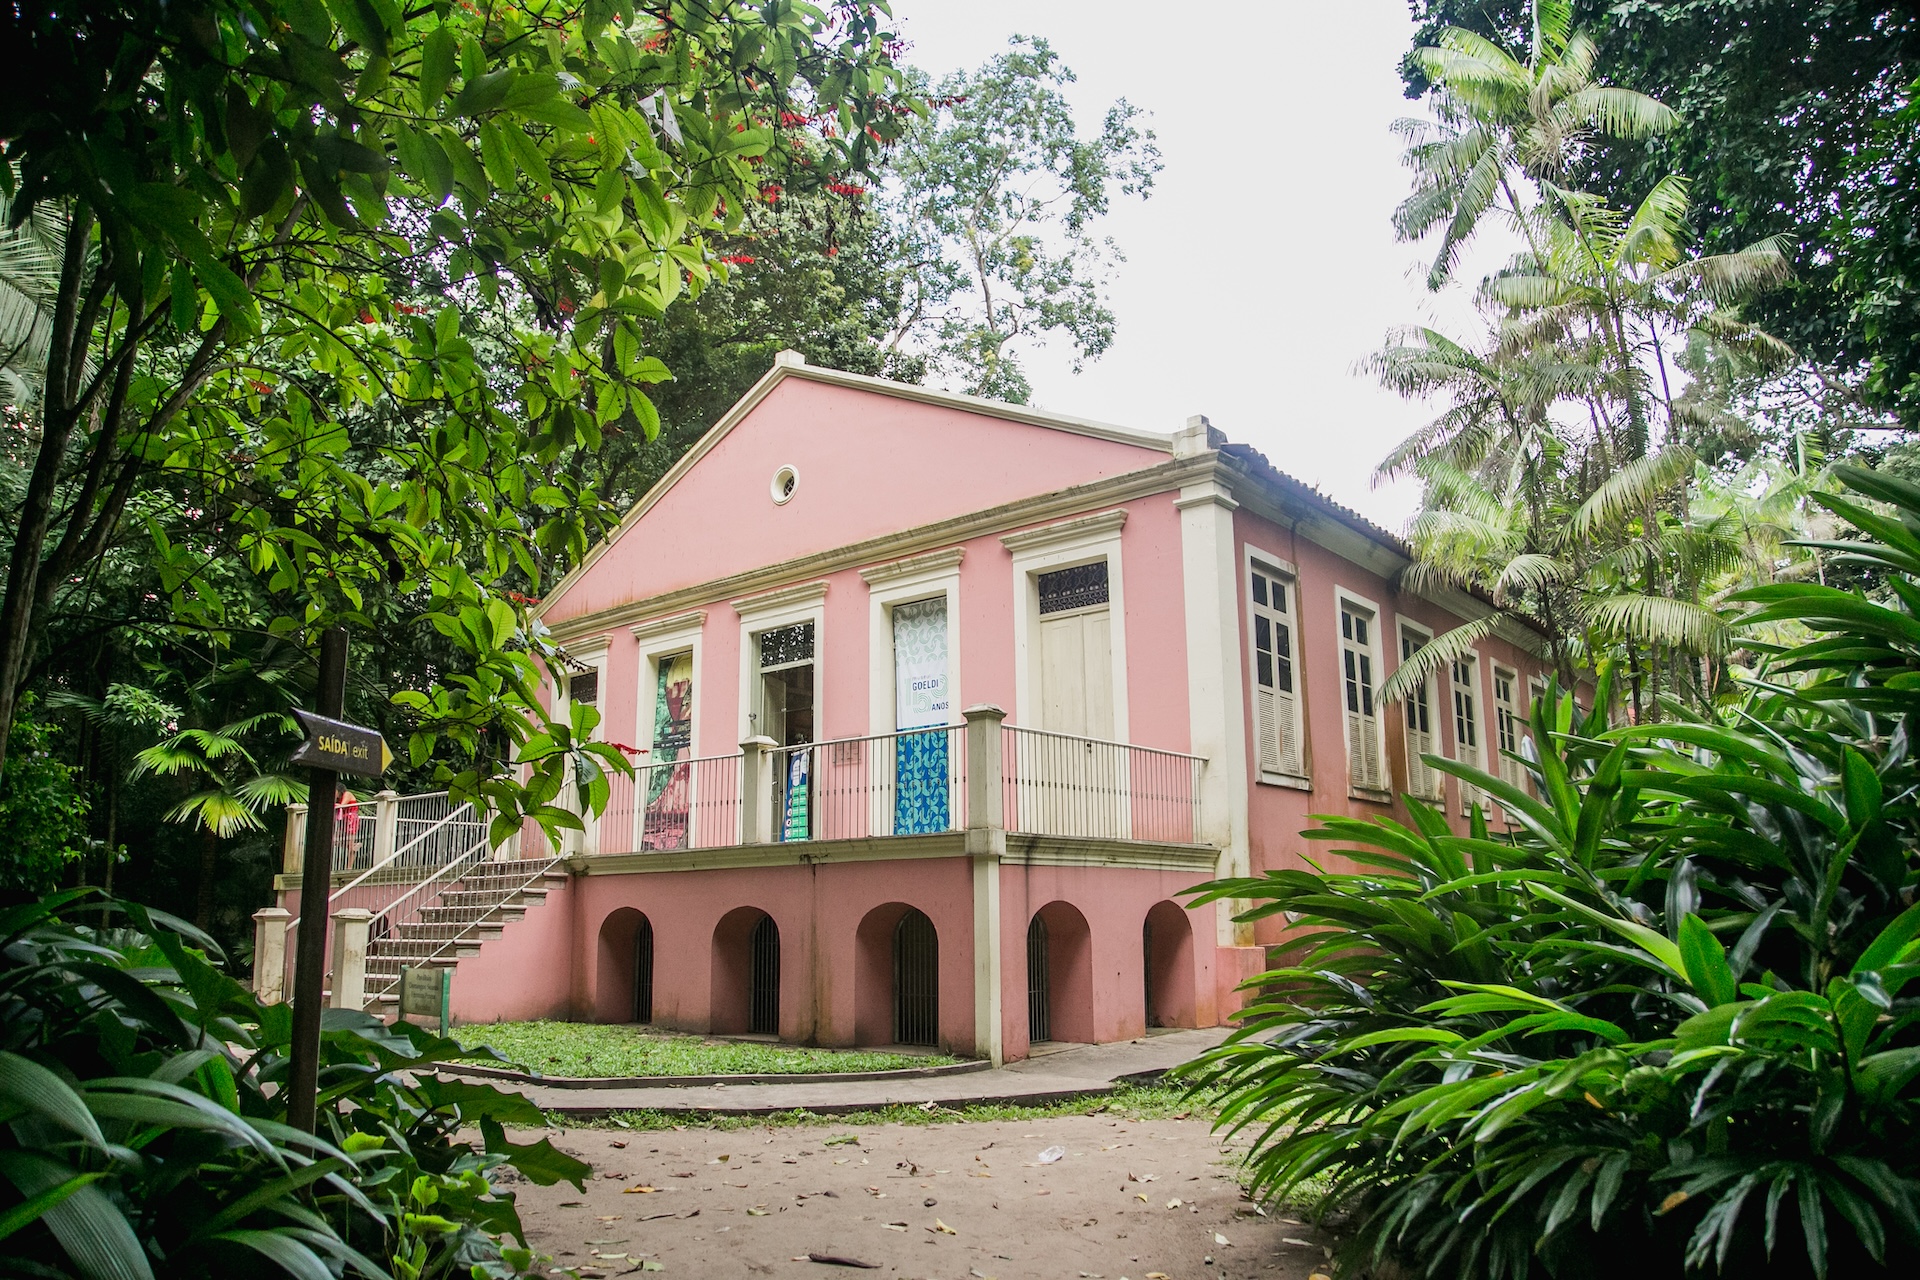 O Museu Paraense Emílio Goeldi, localizado em Belém, é o primeiro parque zoobotânico do Brasil, a mais antiga instituição científica da Amazônia e, o segundo museu de história natural brasileiro.